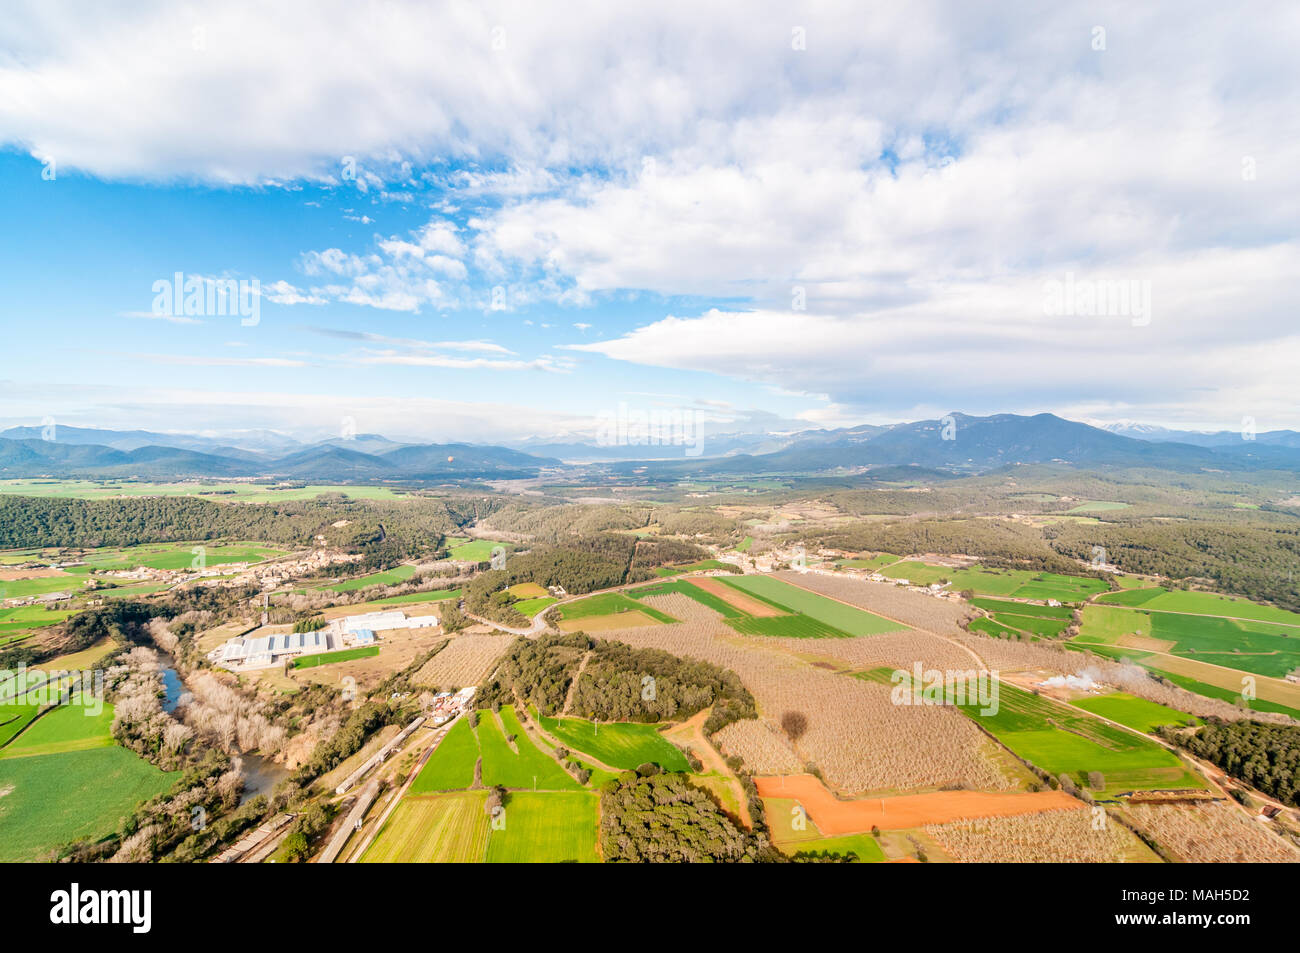 Vista aerea di campi di raccolto e la zona industriale con la foresta tubicini, alcune noci sulla destra, Garrotxa, Catalogna, Spagna Foto Stock